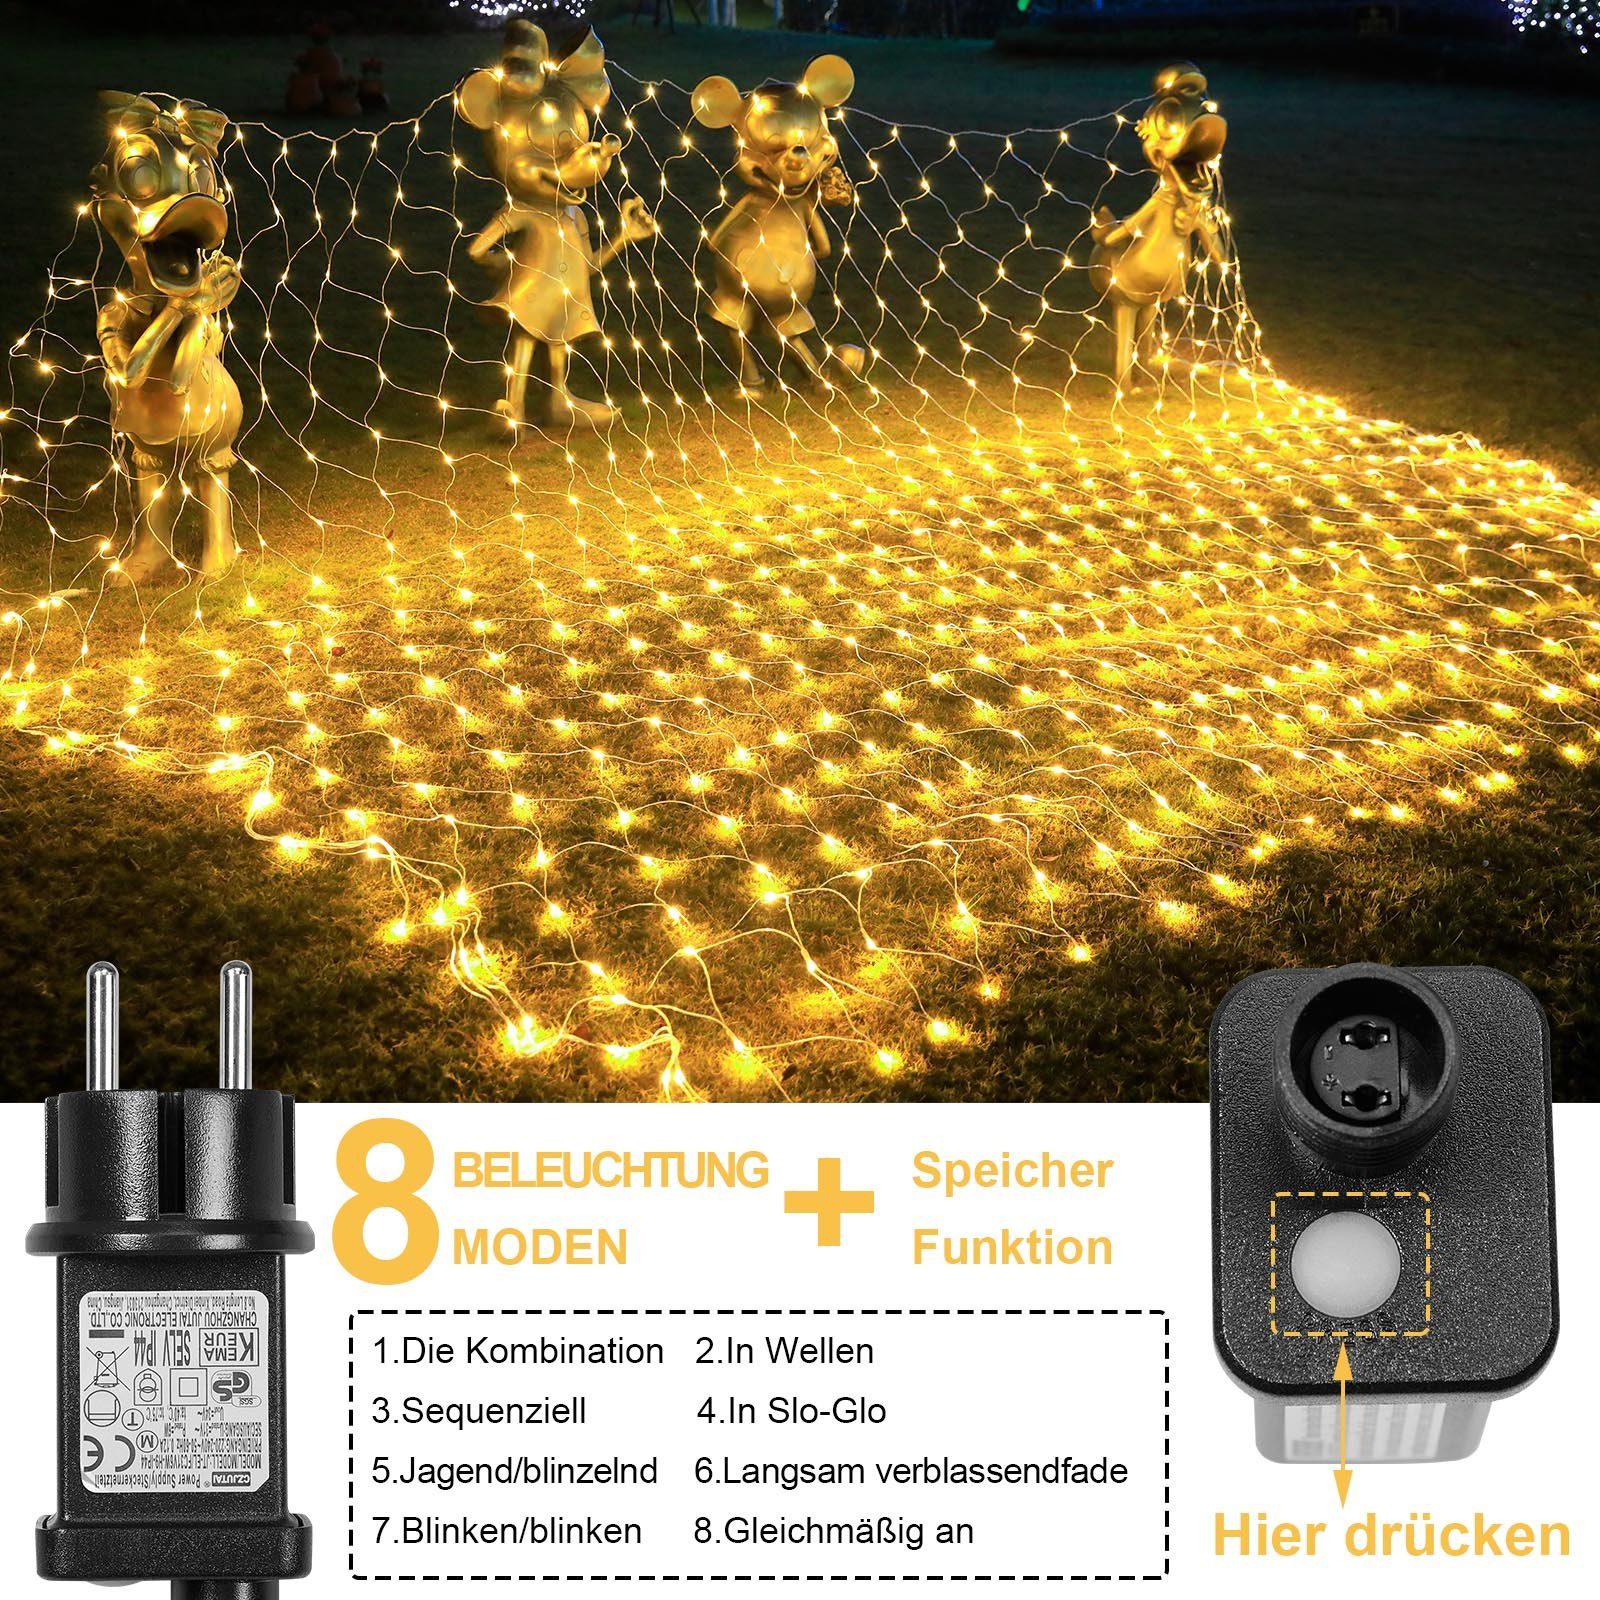 m, LED-Lichternetz Modi Speicher-Funktion 8 MUPOO Lichternetz Modi Warmweiß,6W Energiesparen, Lichterkette,3 Lichteffekt; 2 8 LED Energiesparen;Timer-Funktion; x